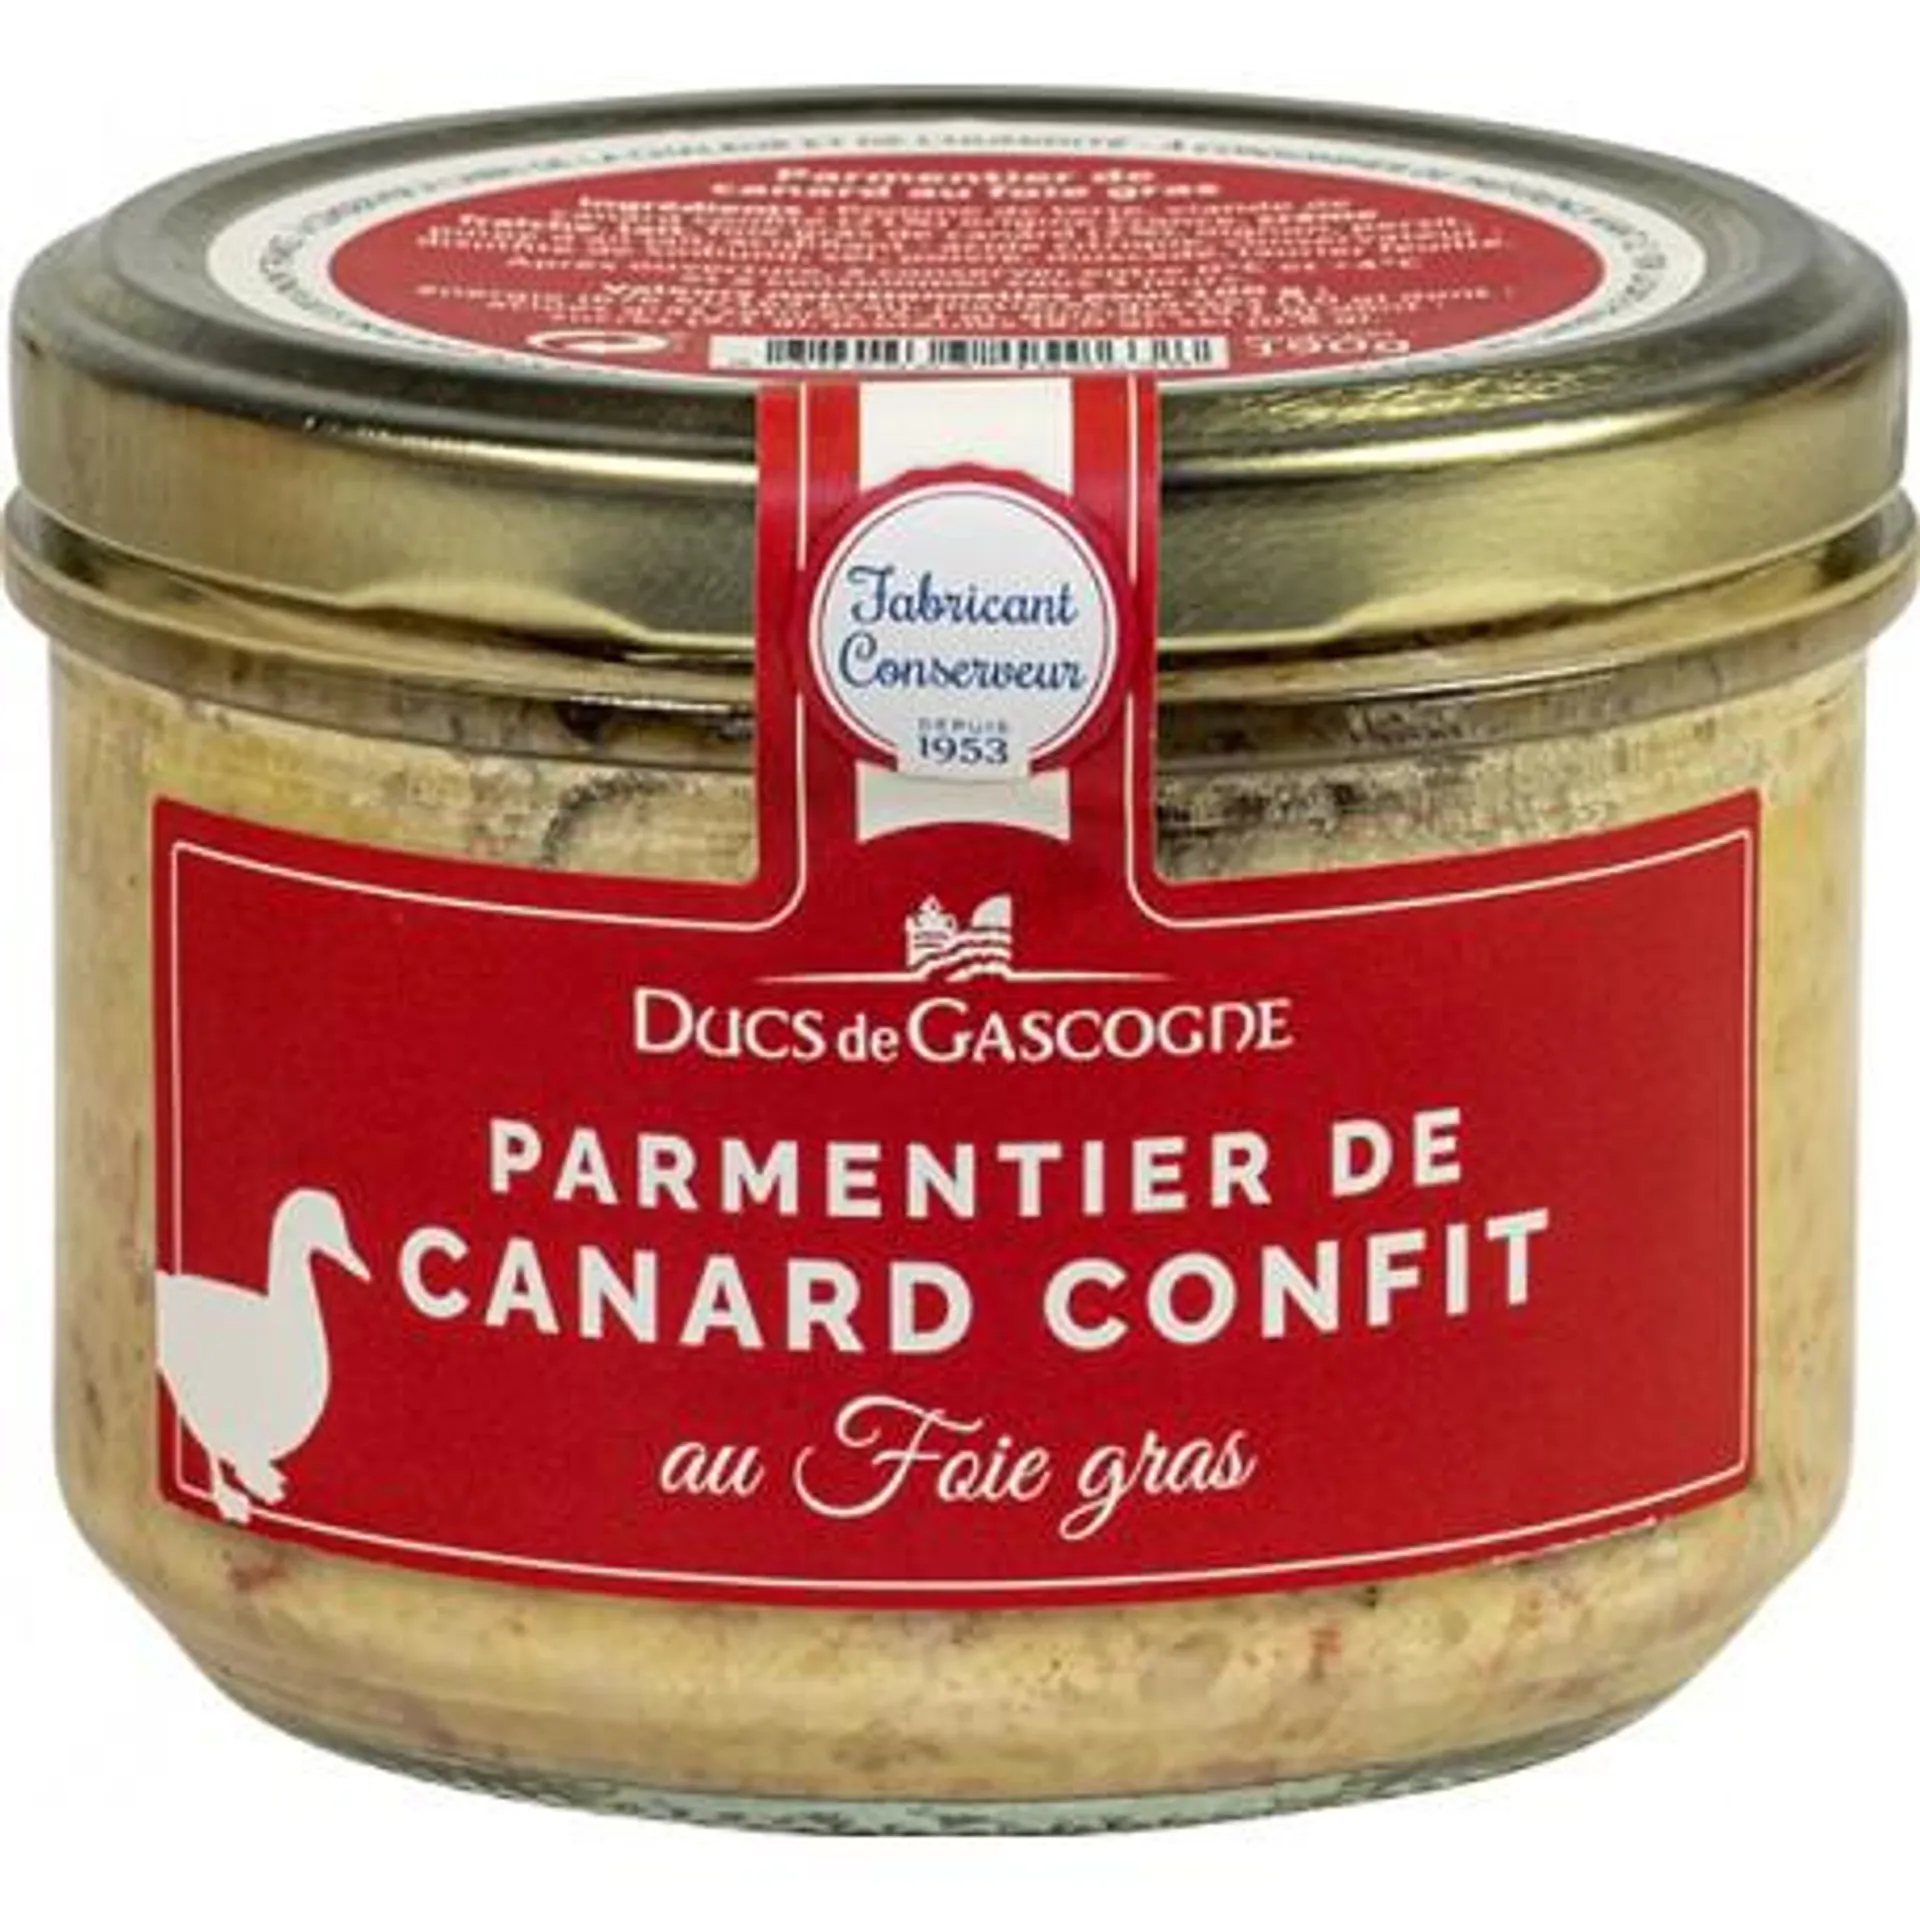 Parmentier de canard confit au foie gras